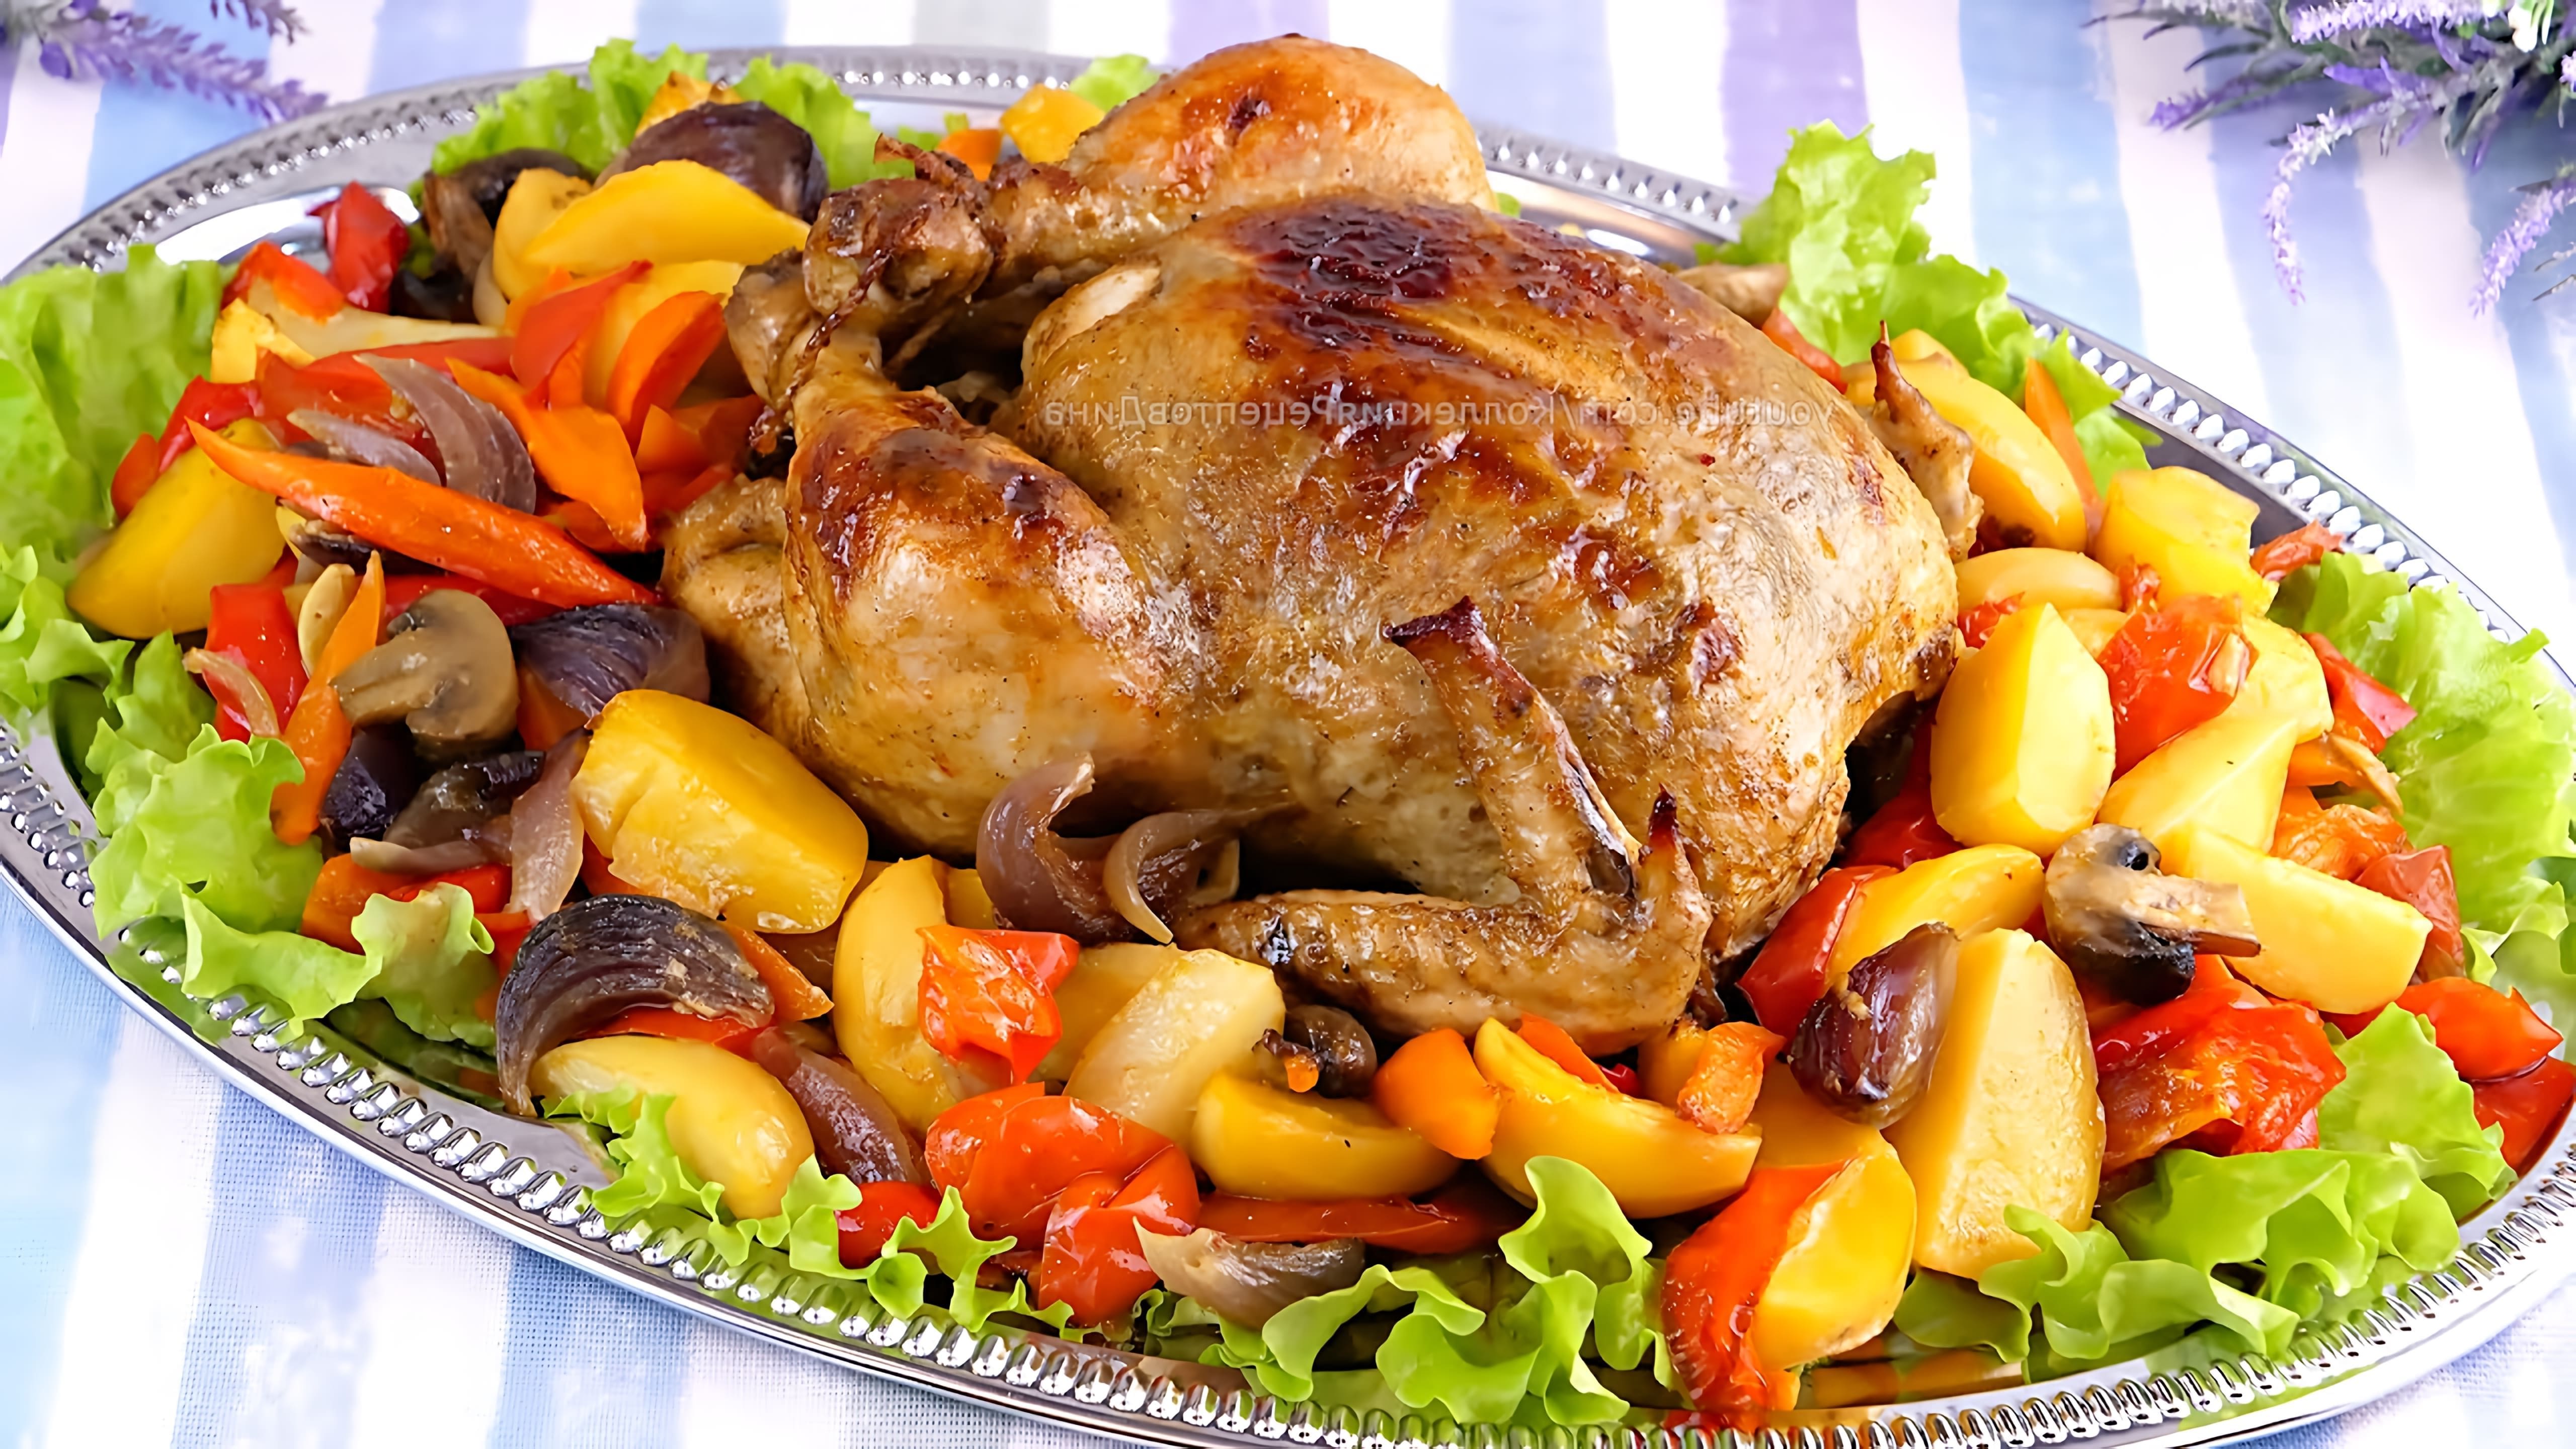 В этом видео демонстрируется рецепт приготовления праздничной курицы в духовке с овощами